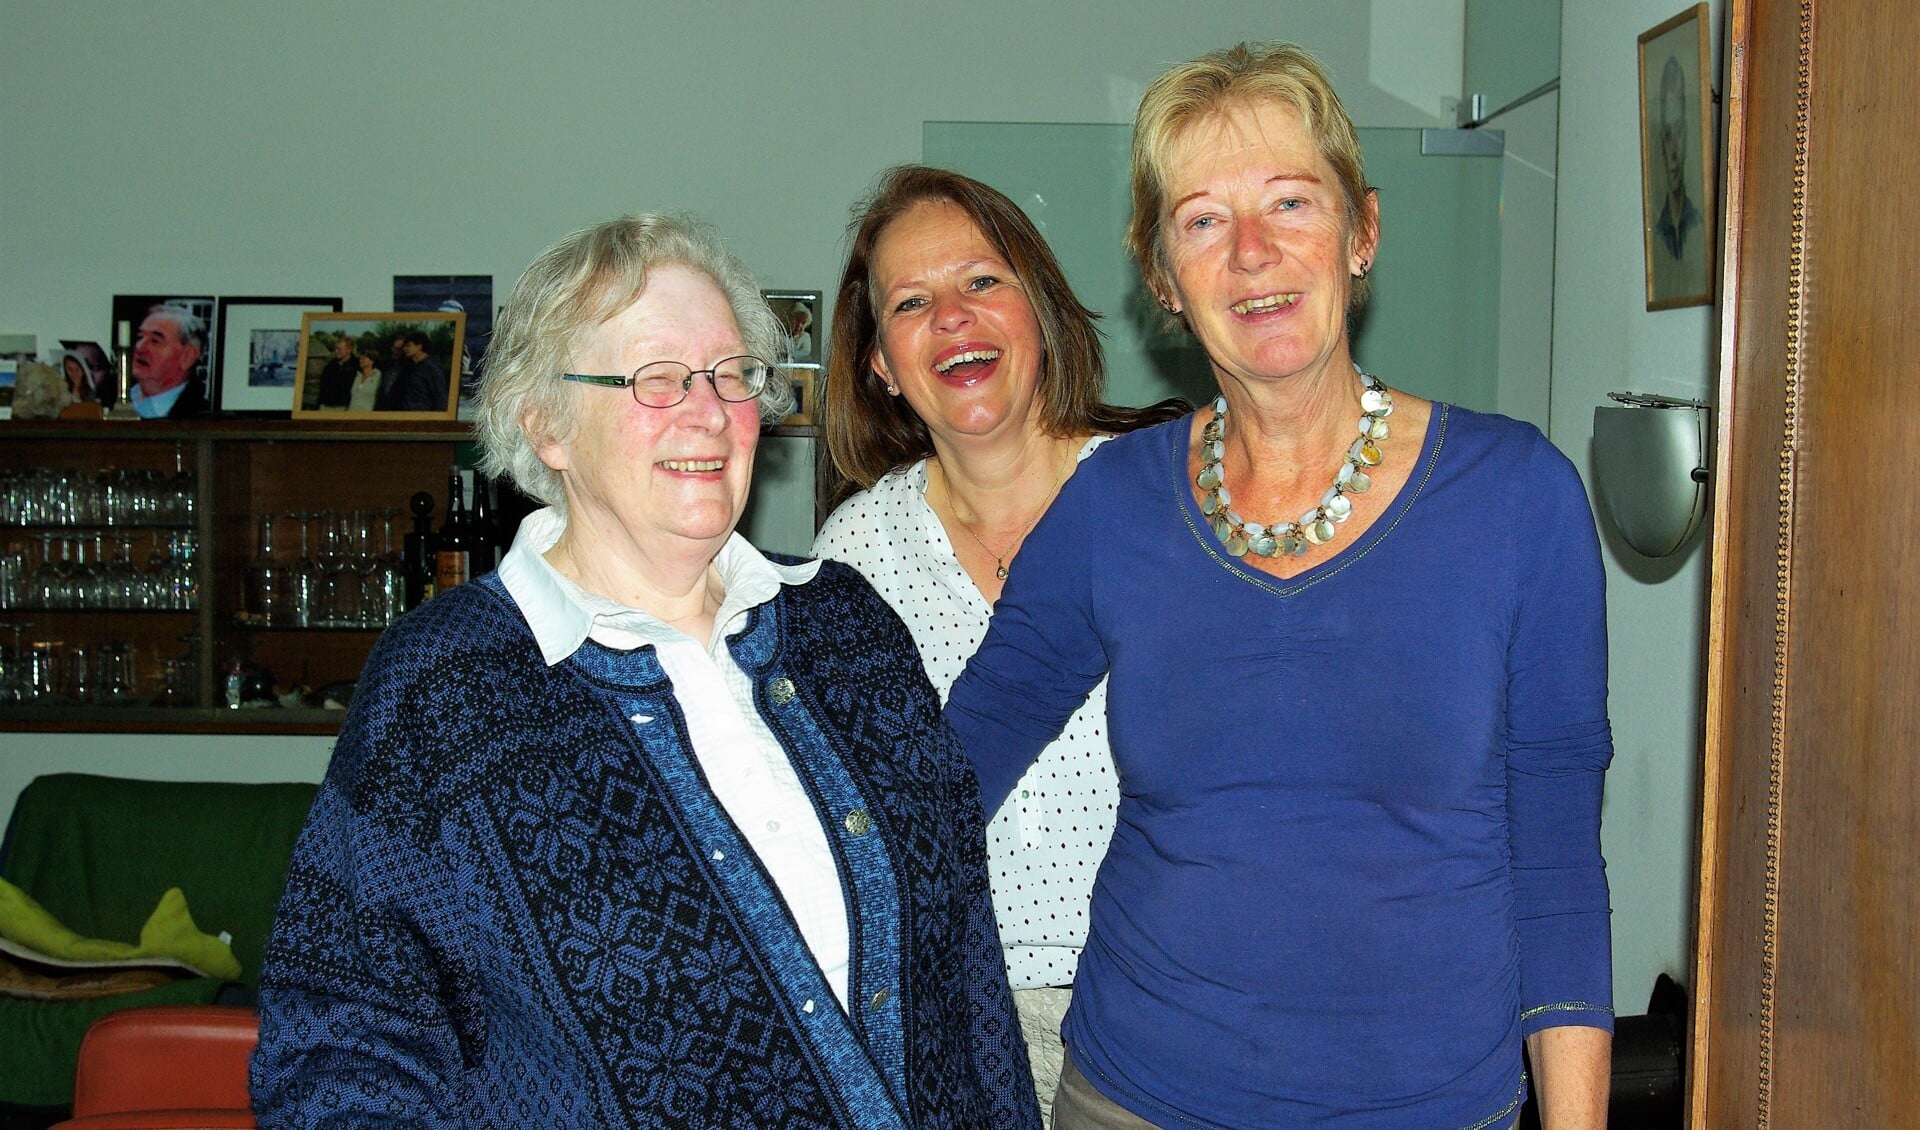 Vera de Cock, Marita Waden en Ineke Lampert (v.l.n.r.) vinden het fijn iets voor elkaar te kunnen betekenen.